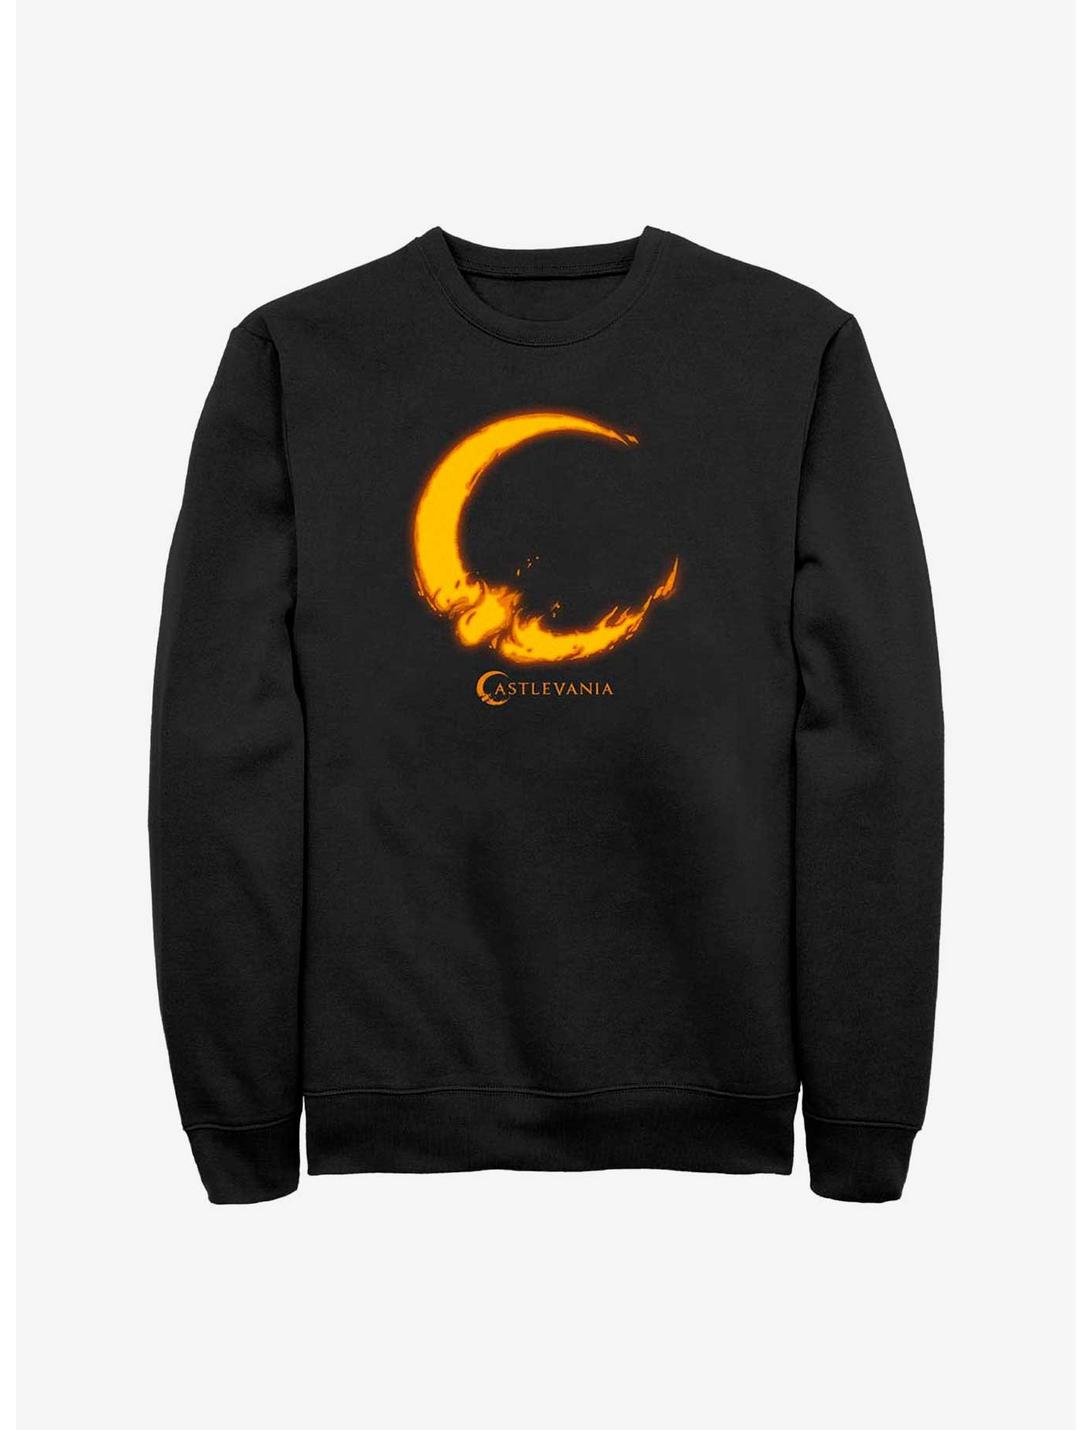 Castlevania Moon Fire Sweatshirt, BLACK, hi-res